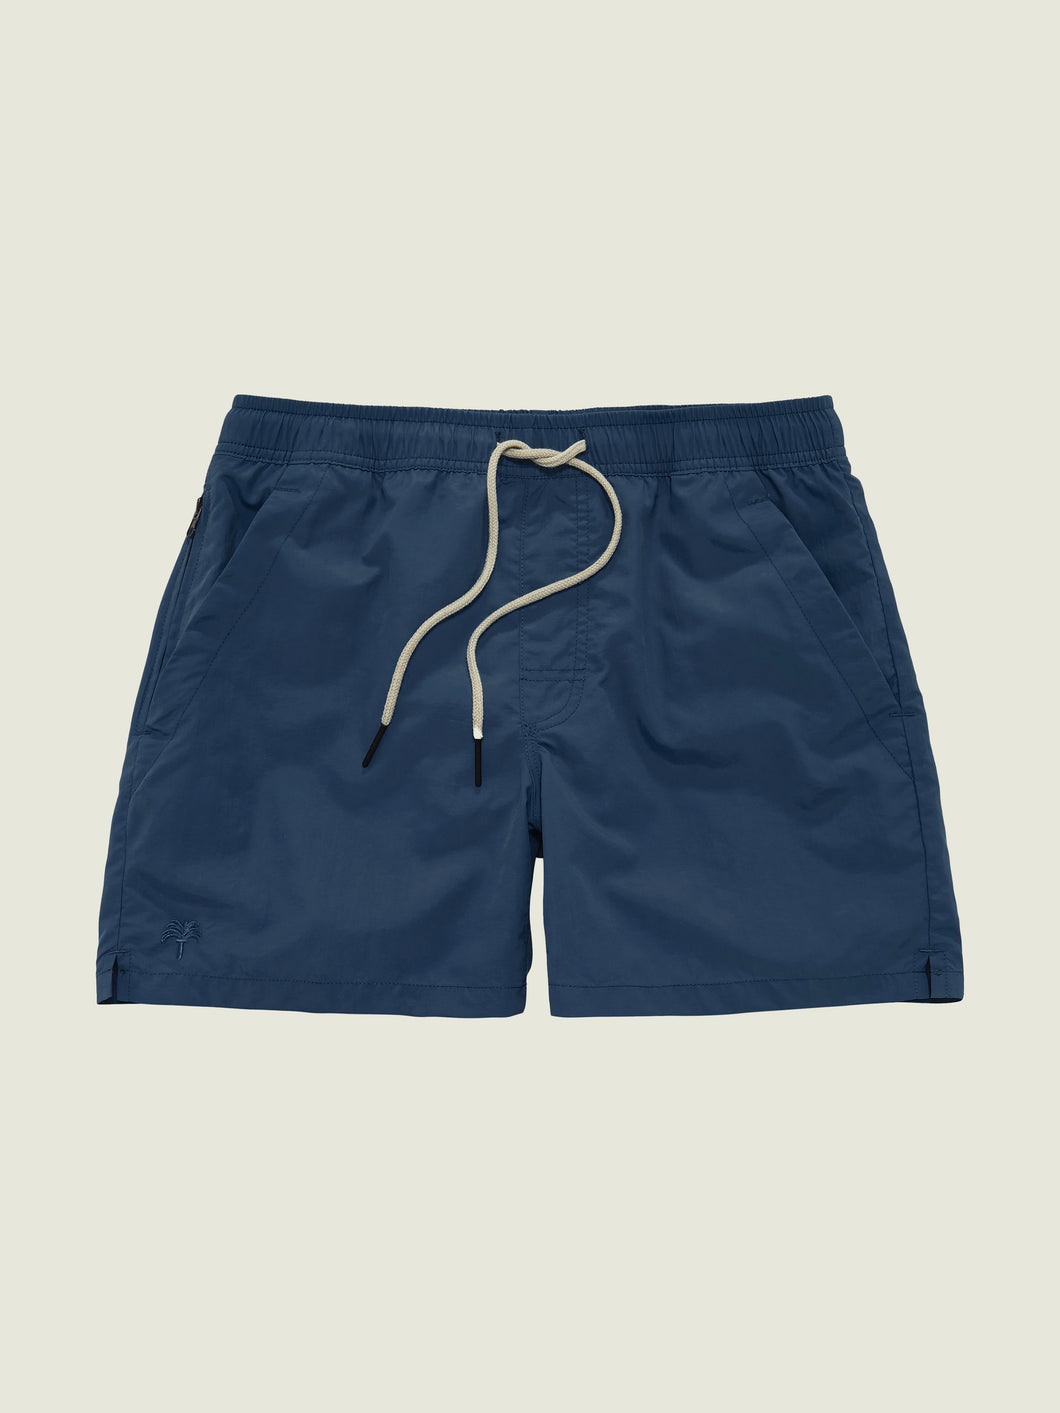 Men's Navy Swim Shorts